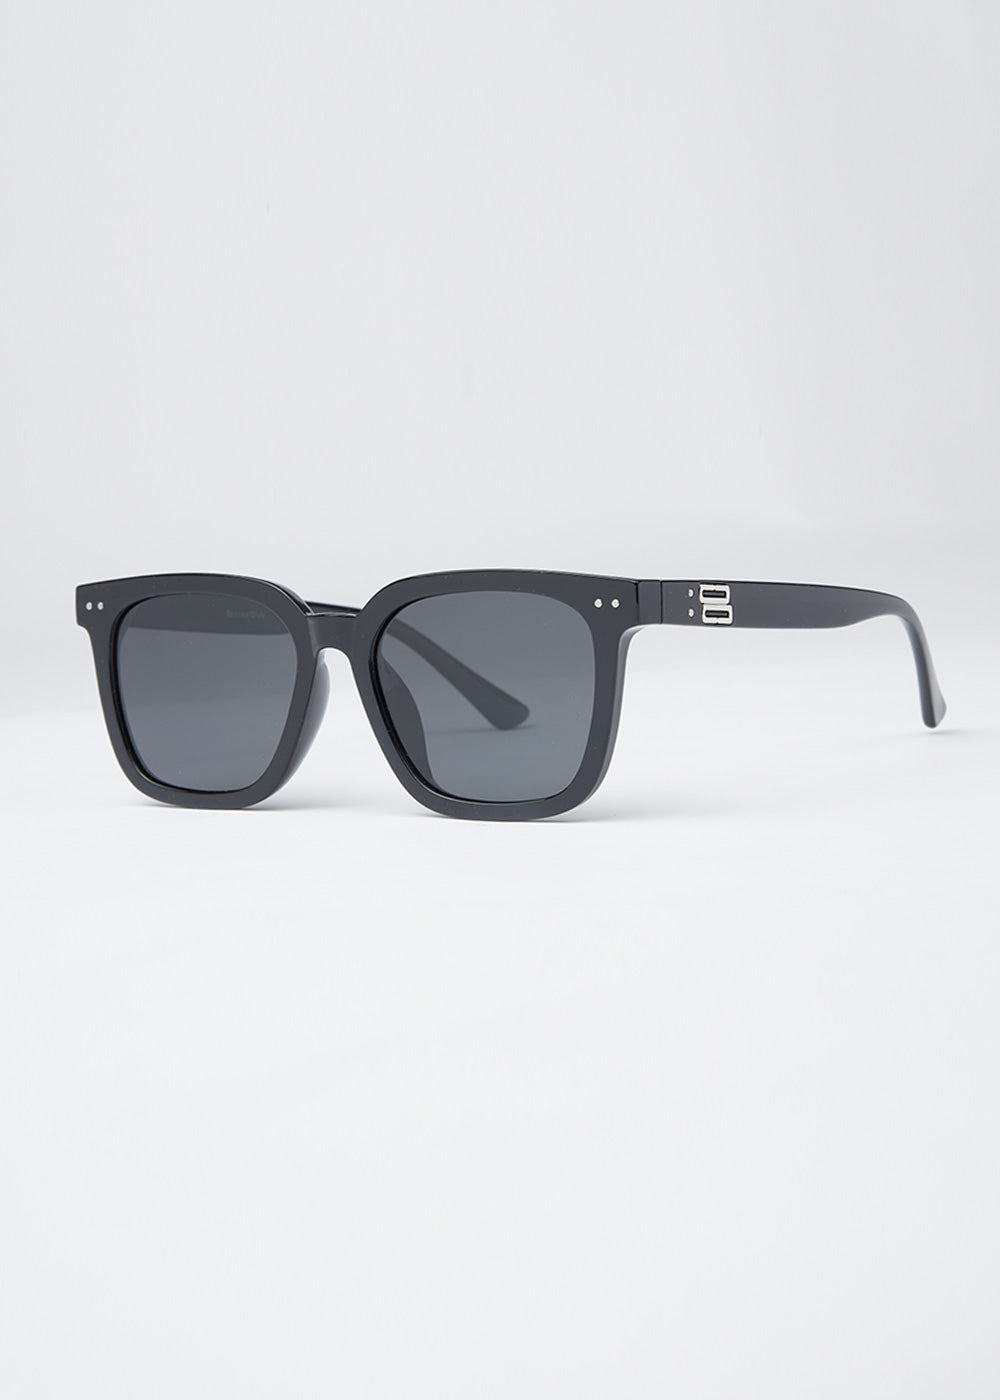 Luminous Black Unisex Square Sunglasses